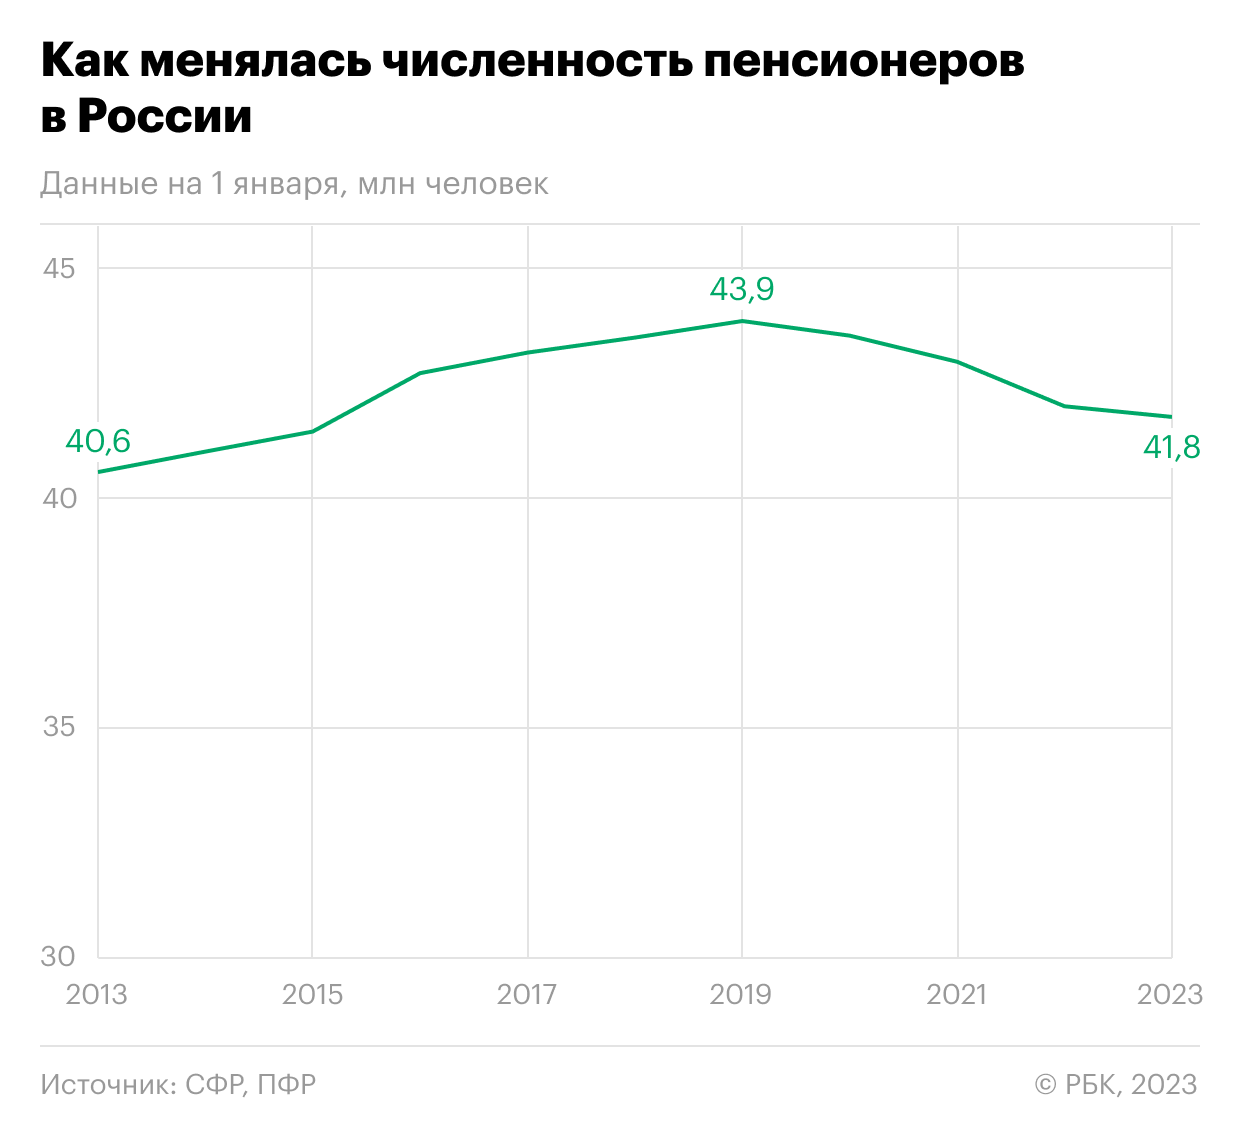 Как последние 10 лет менялось число пенсионеров в России. Инфографика